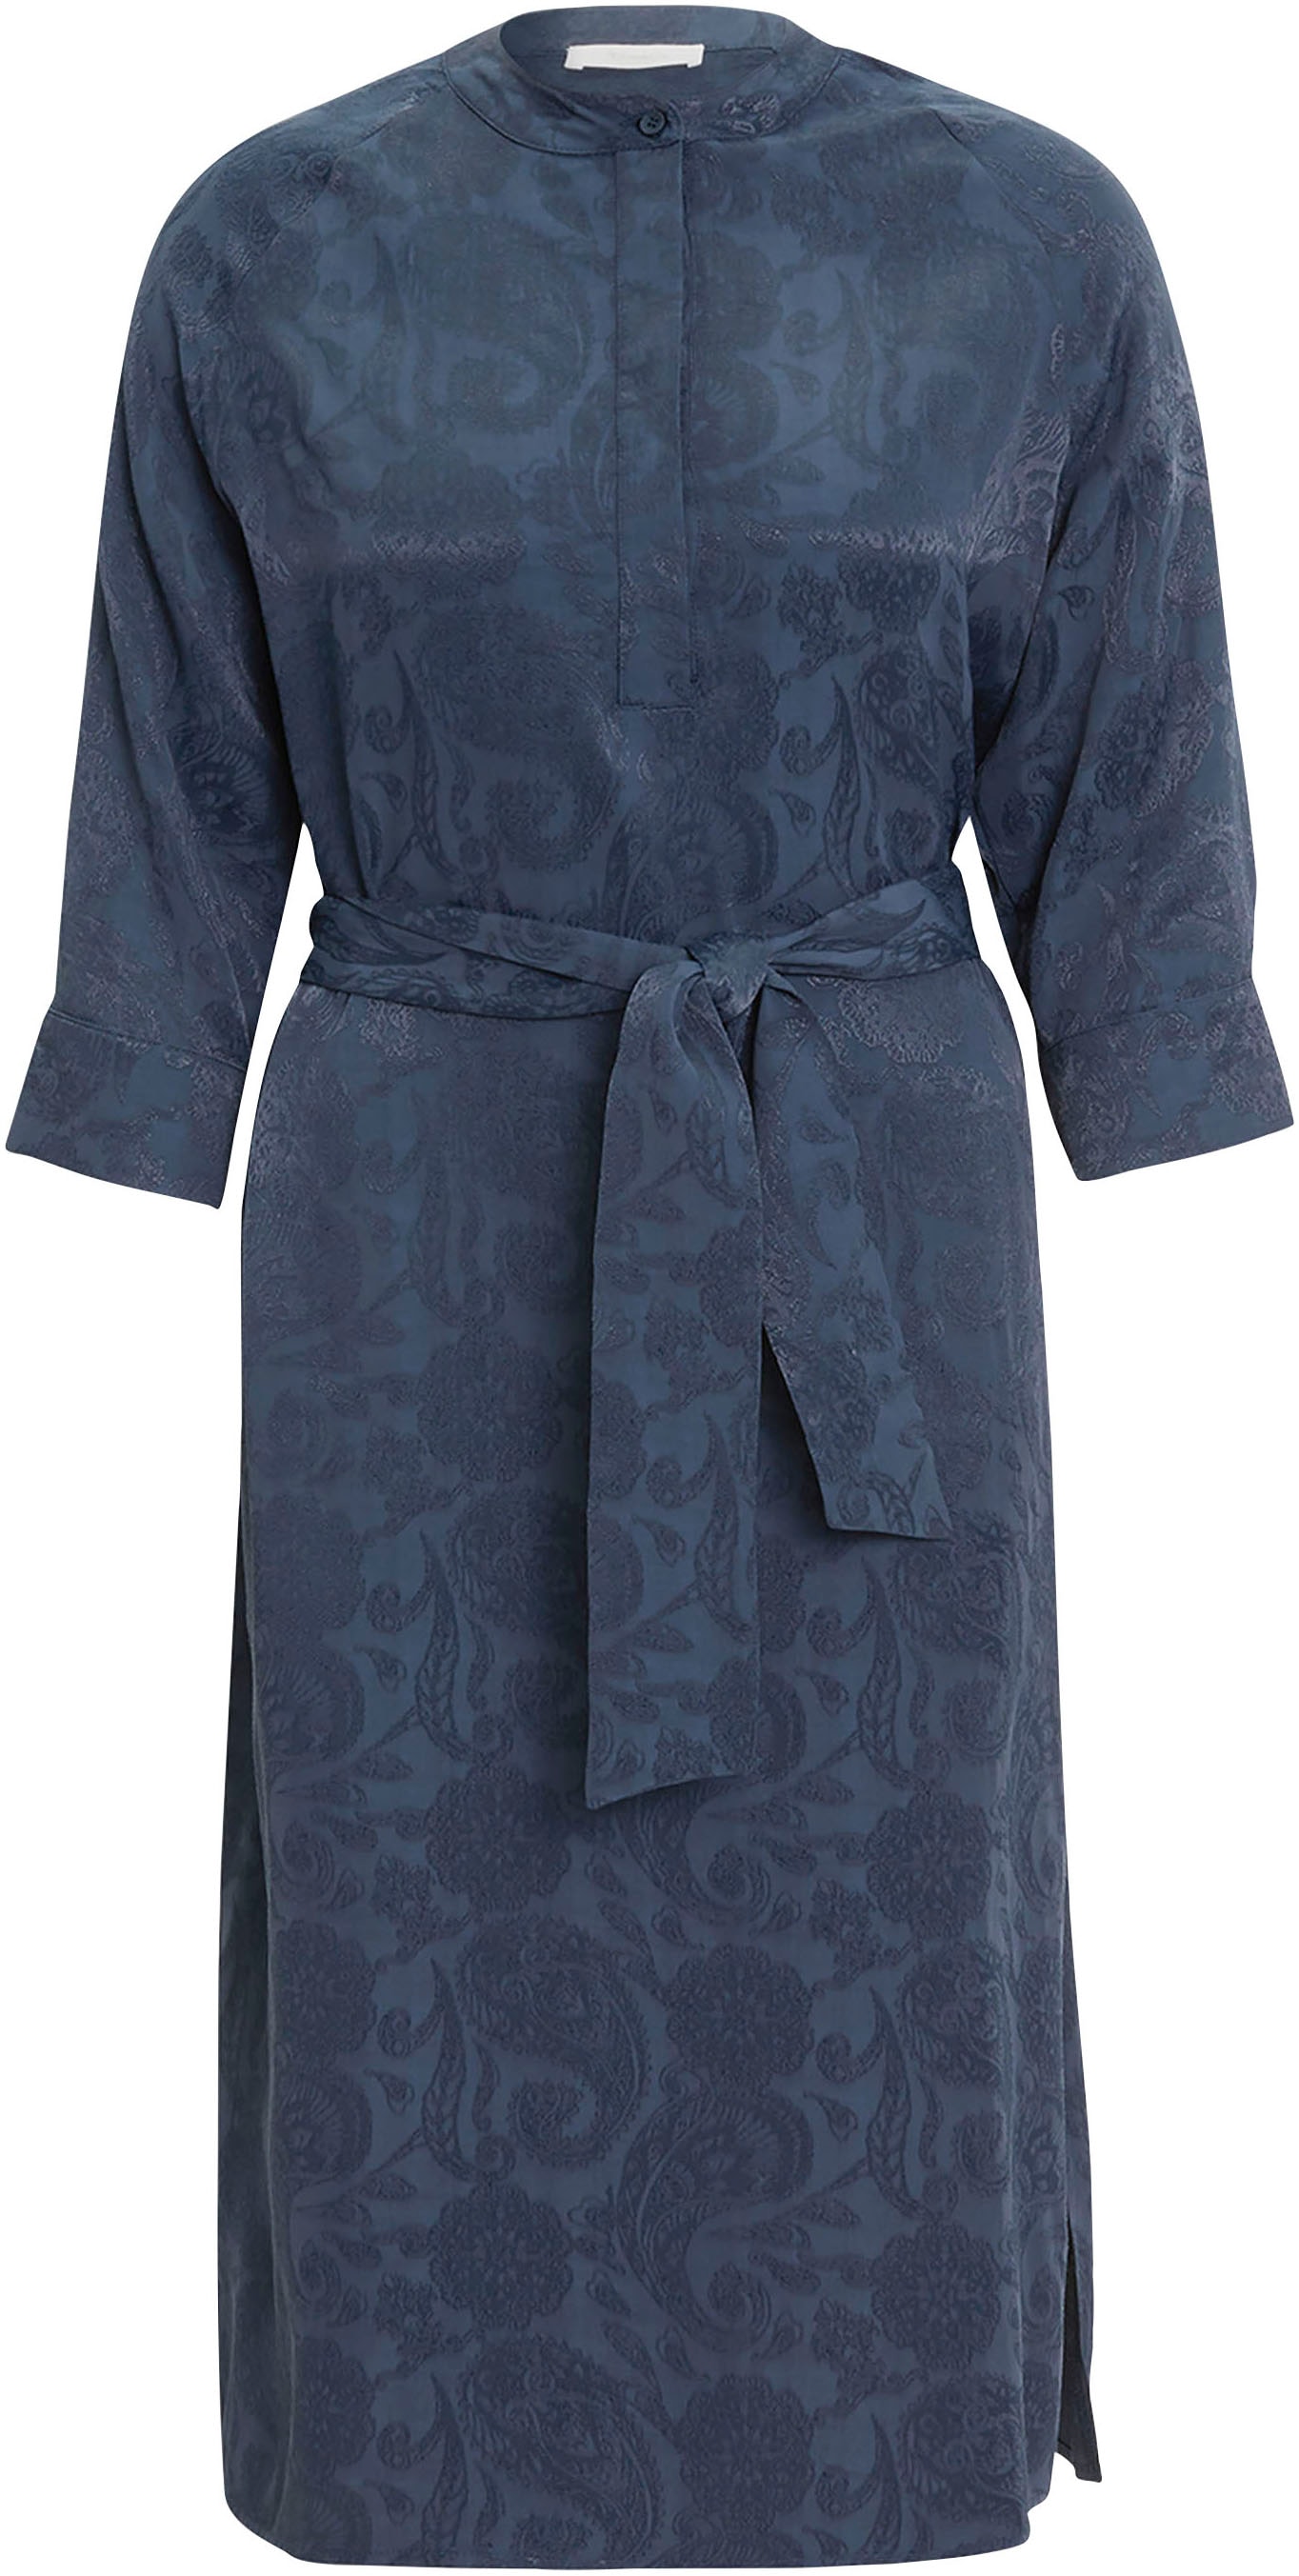 Tamaris Hemdblusenkleid, mit glänzenden Paisley-Muster NEUE - KOLLEKTION kaufen